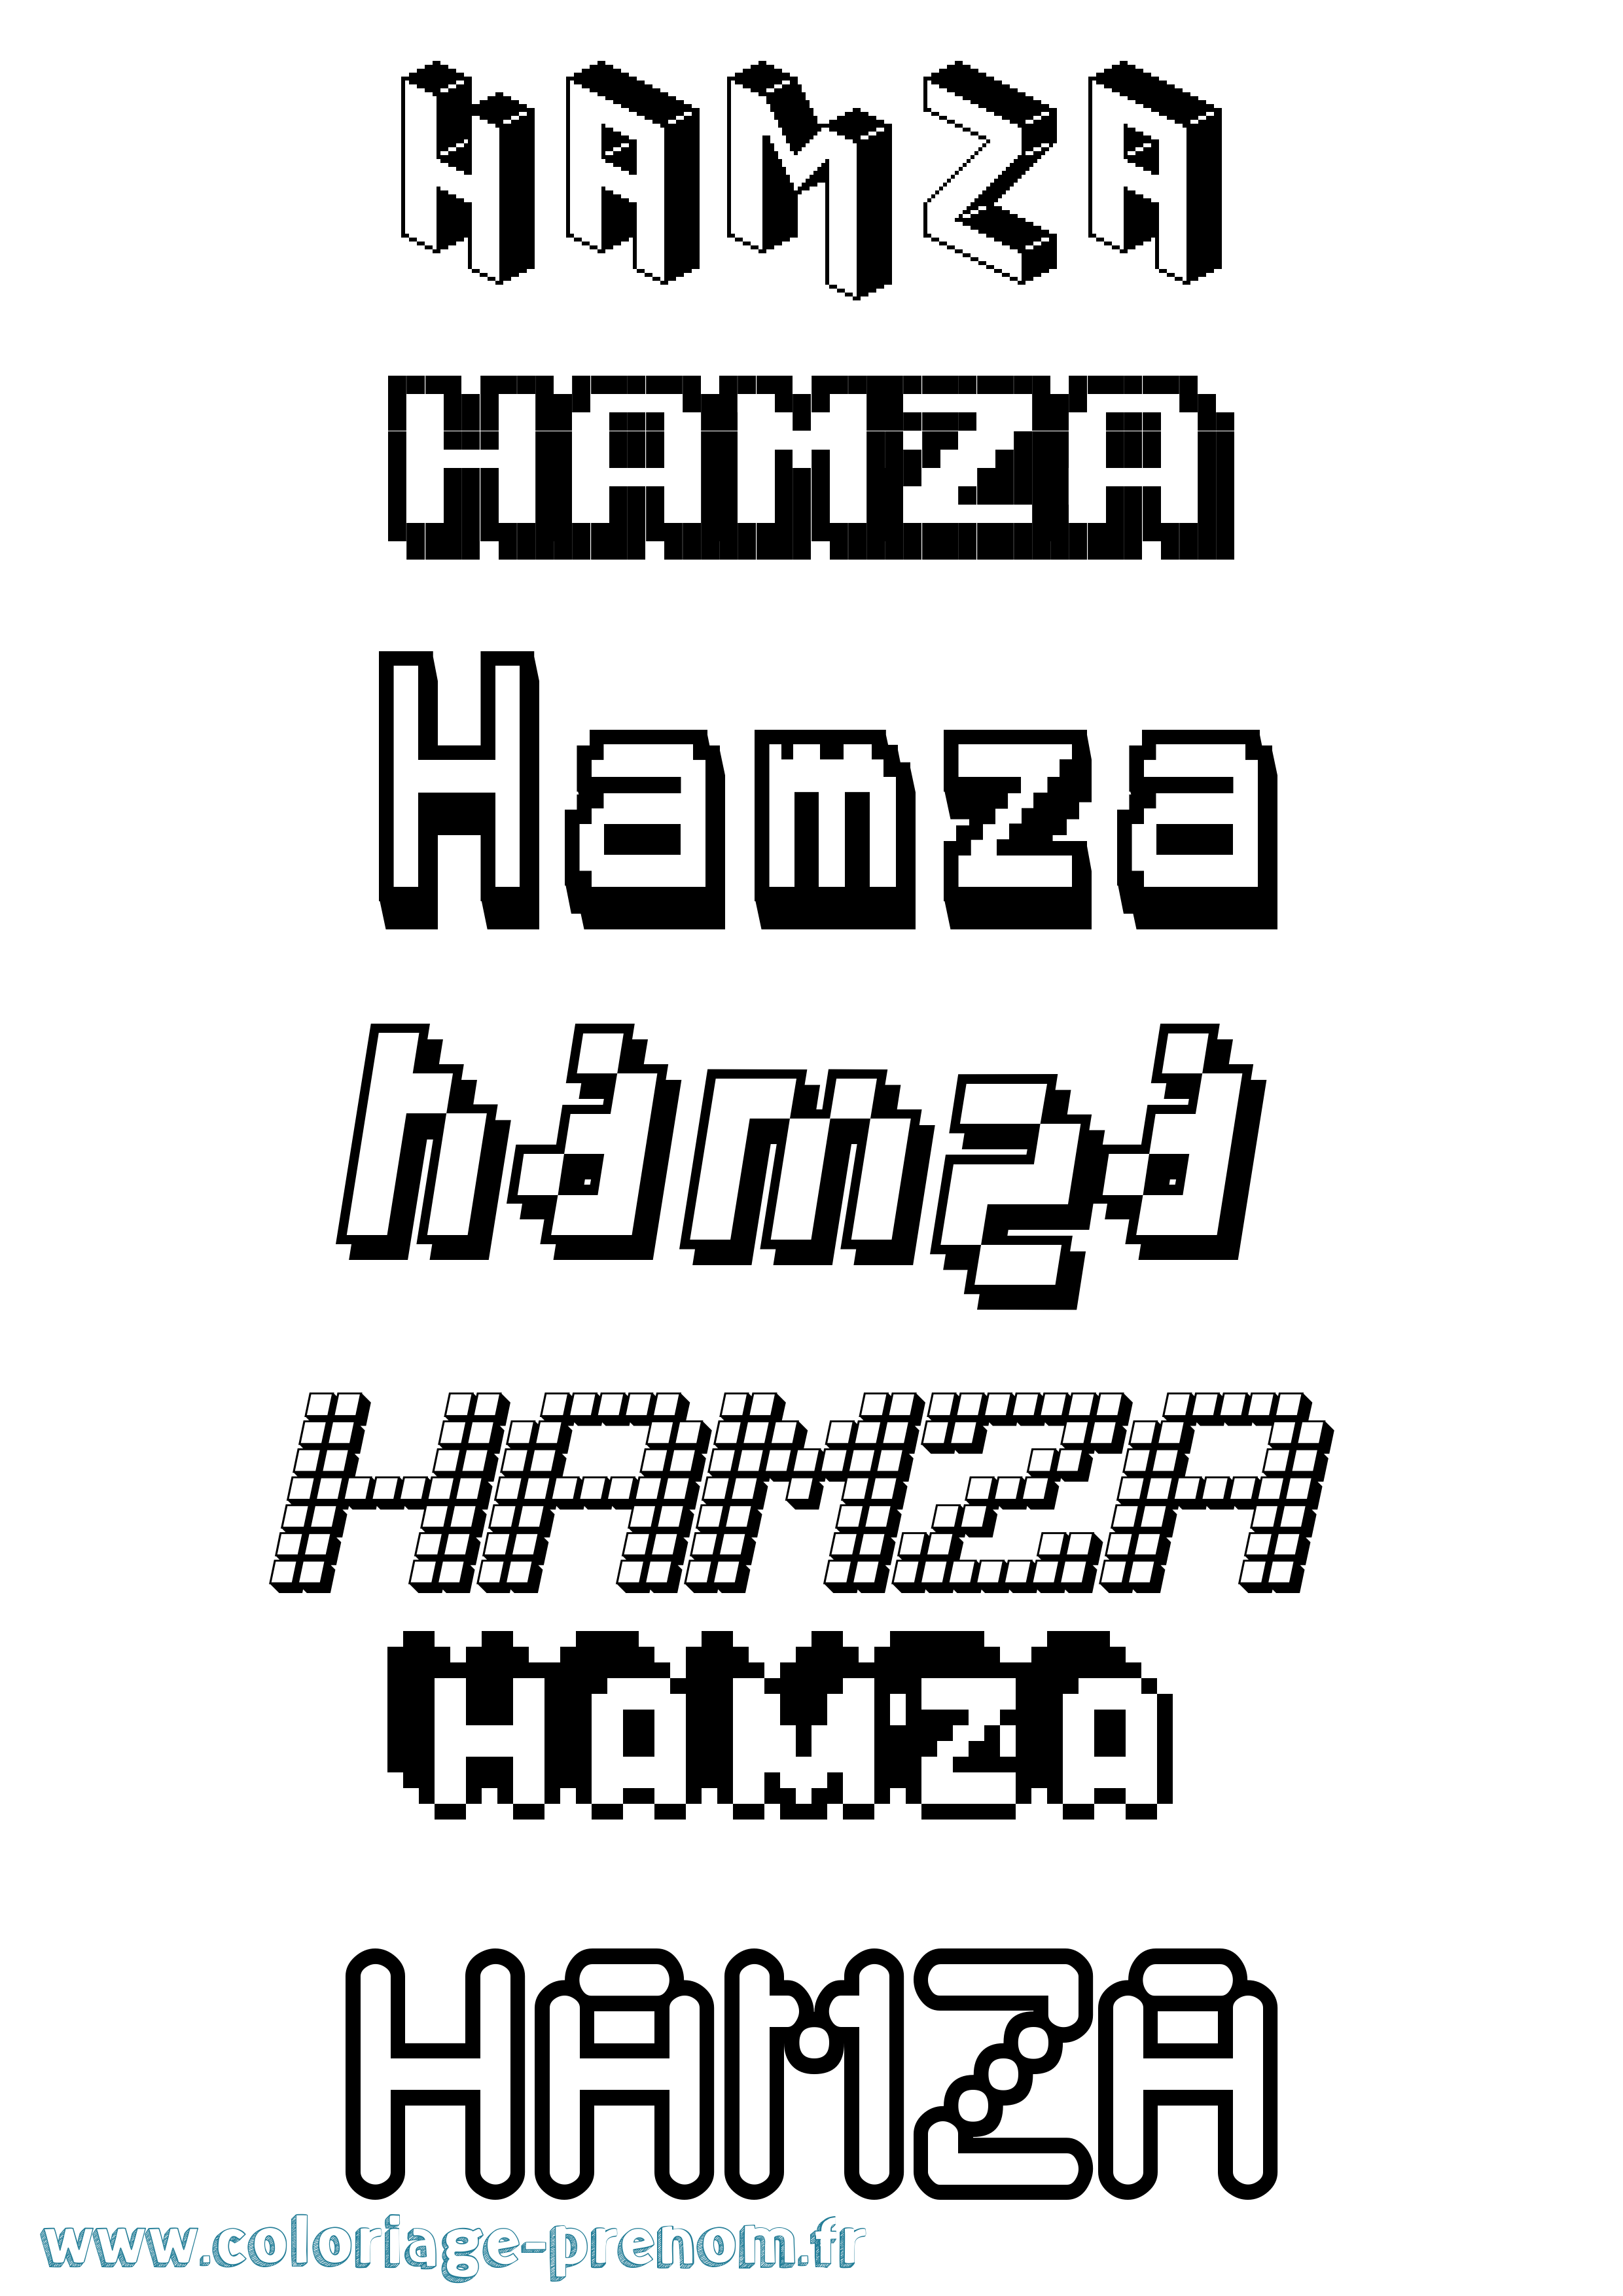 Coloriage prénom Hamza